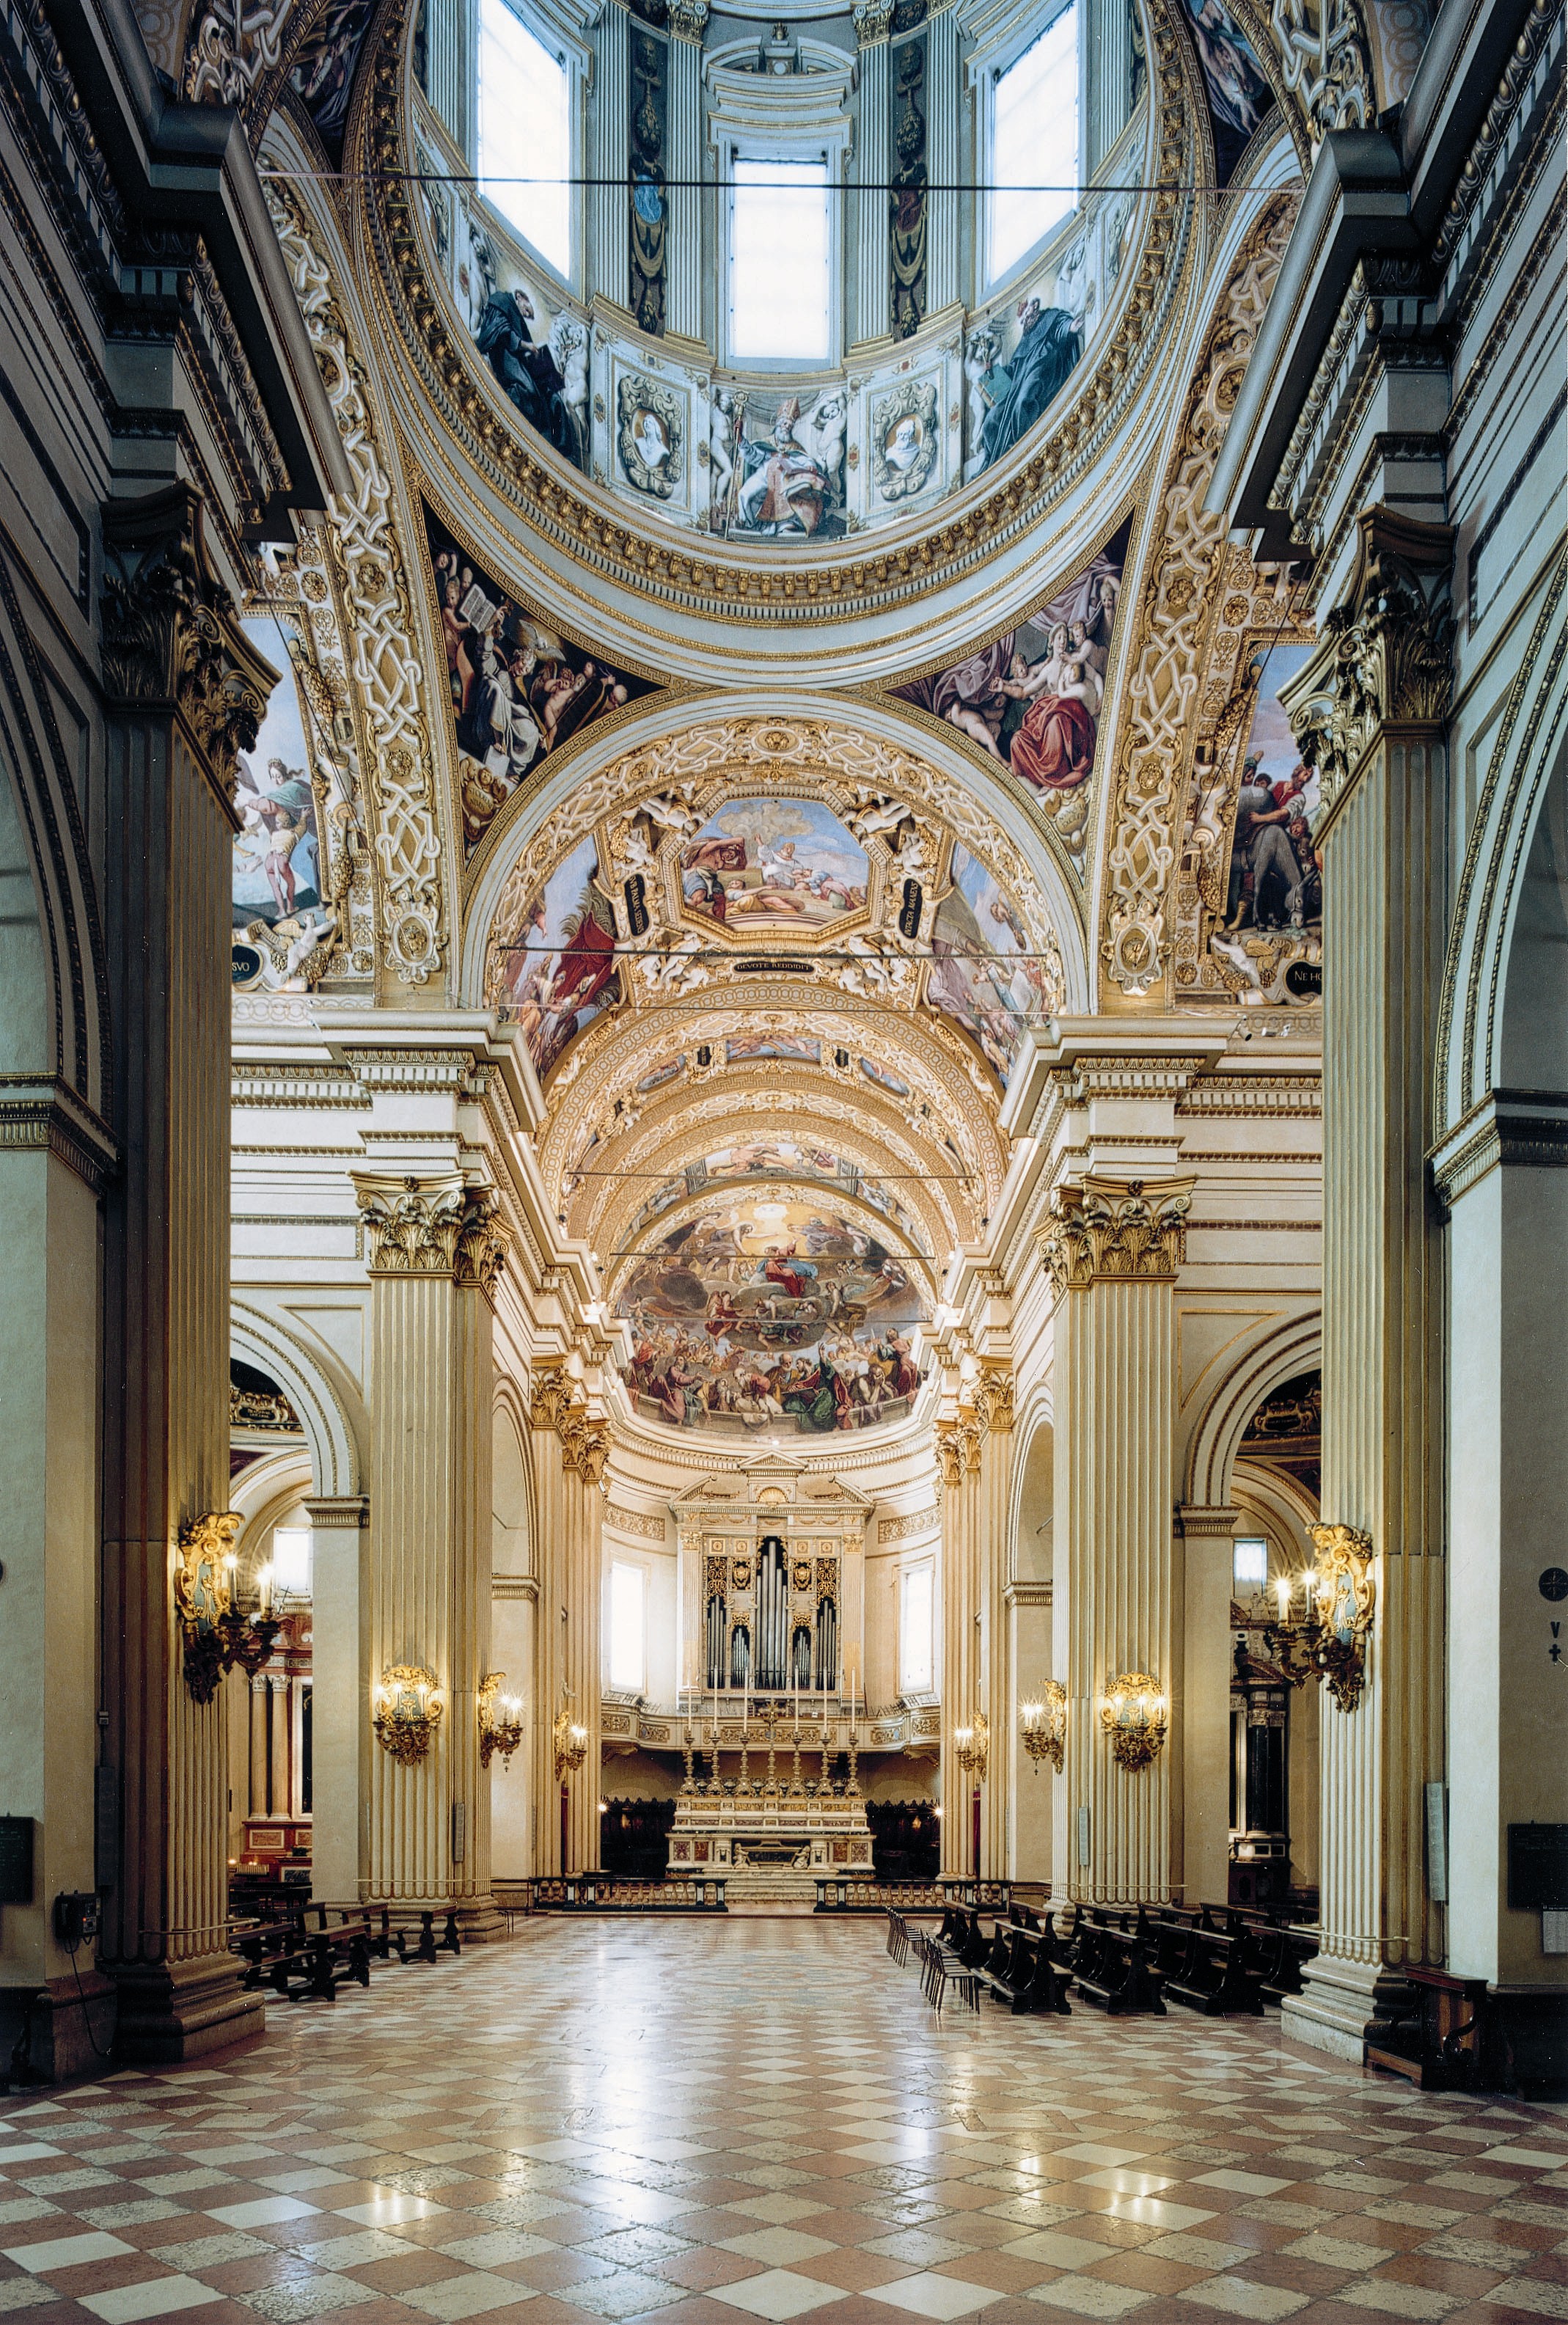 Basilica della Madonna della Ghiara